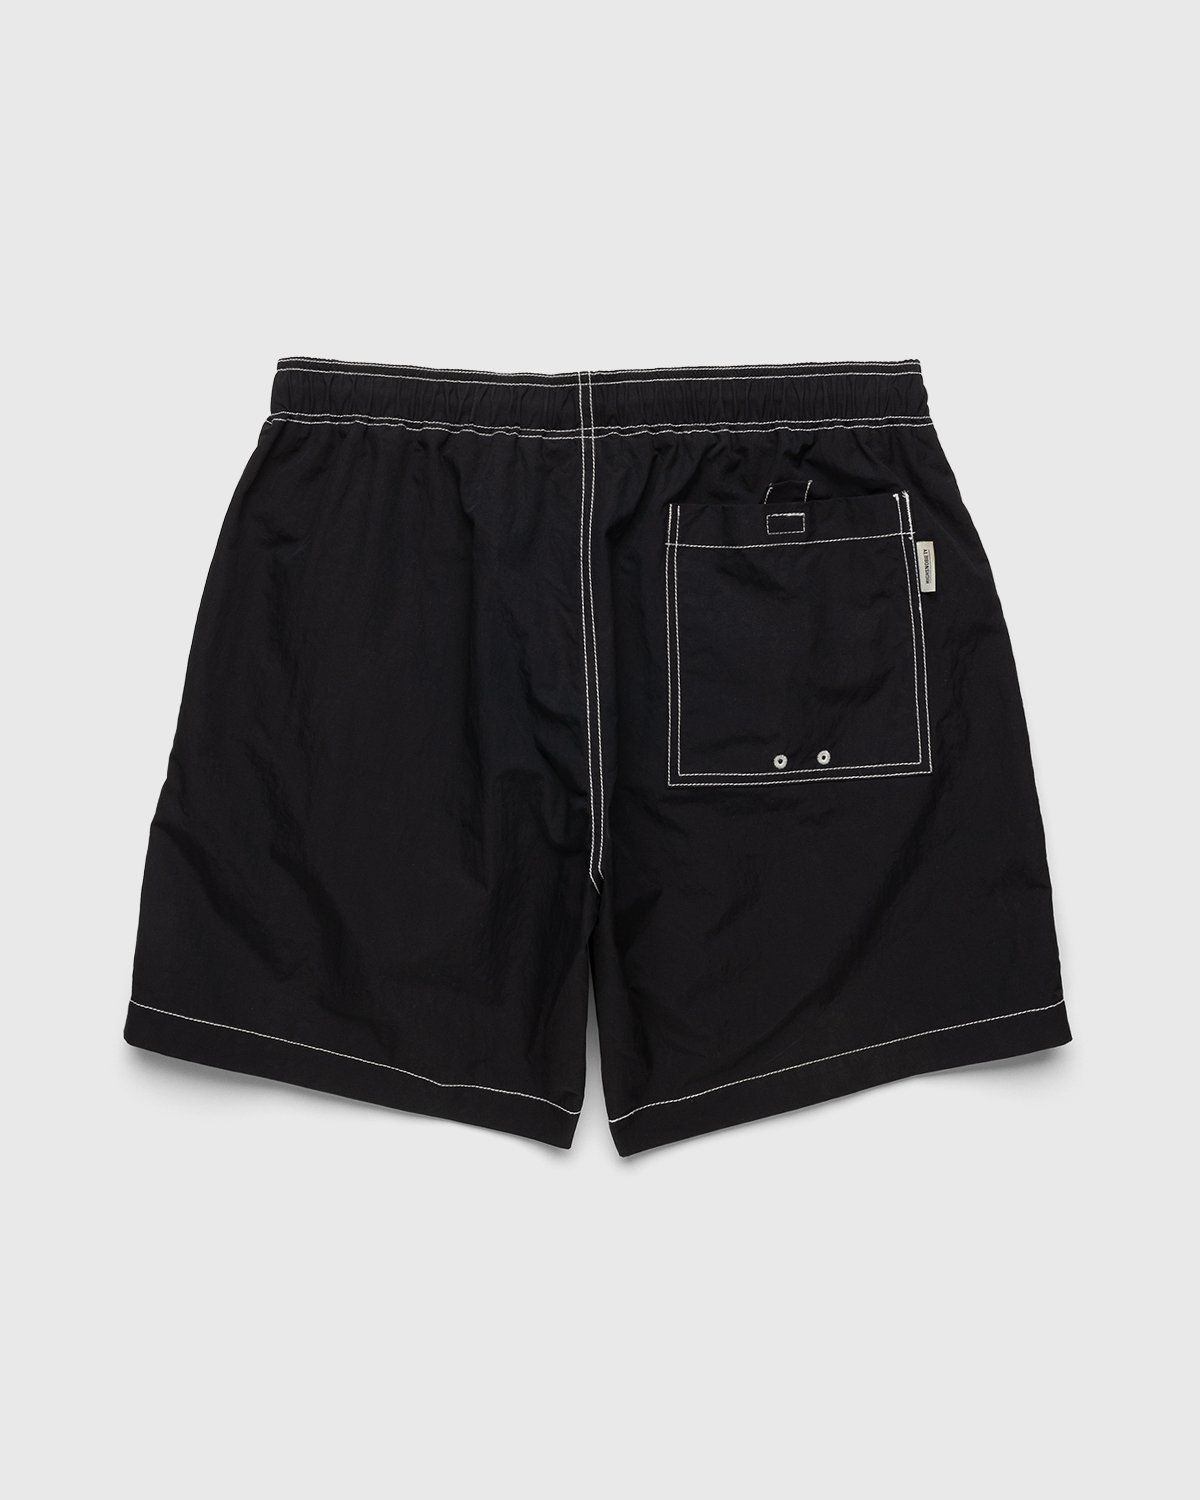 Highsnobiety – Contrast Brushed Nylon Water Shorts Black - Shorts - Black - Image 2